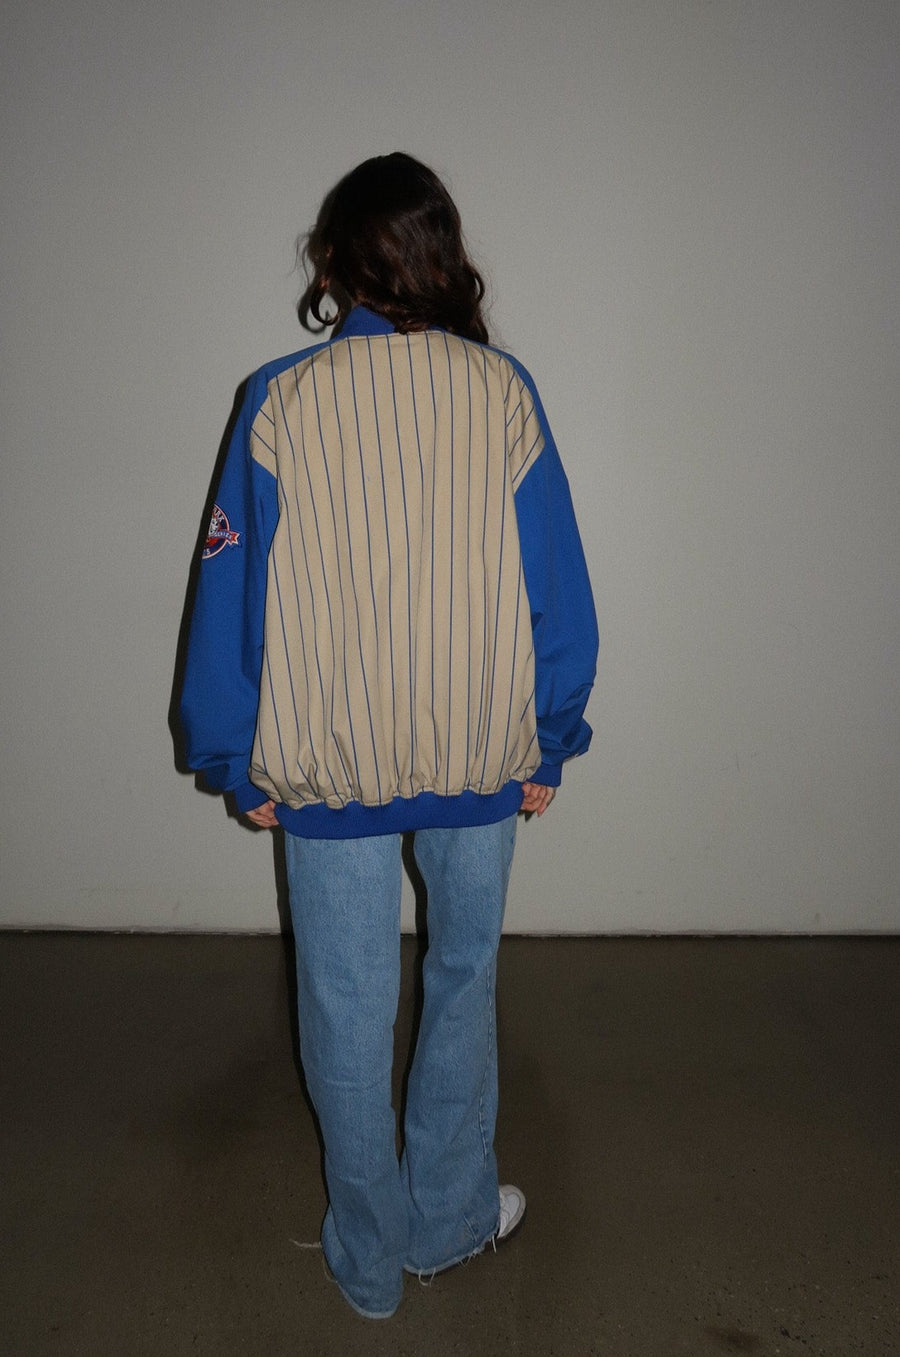 Mets Jacket by Luna B Vintage